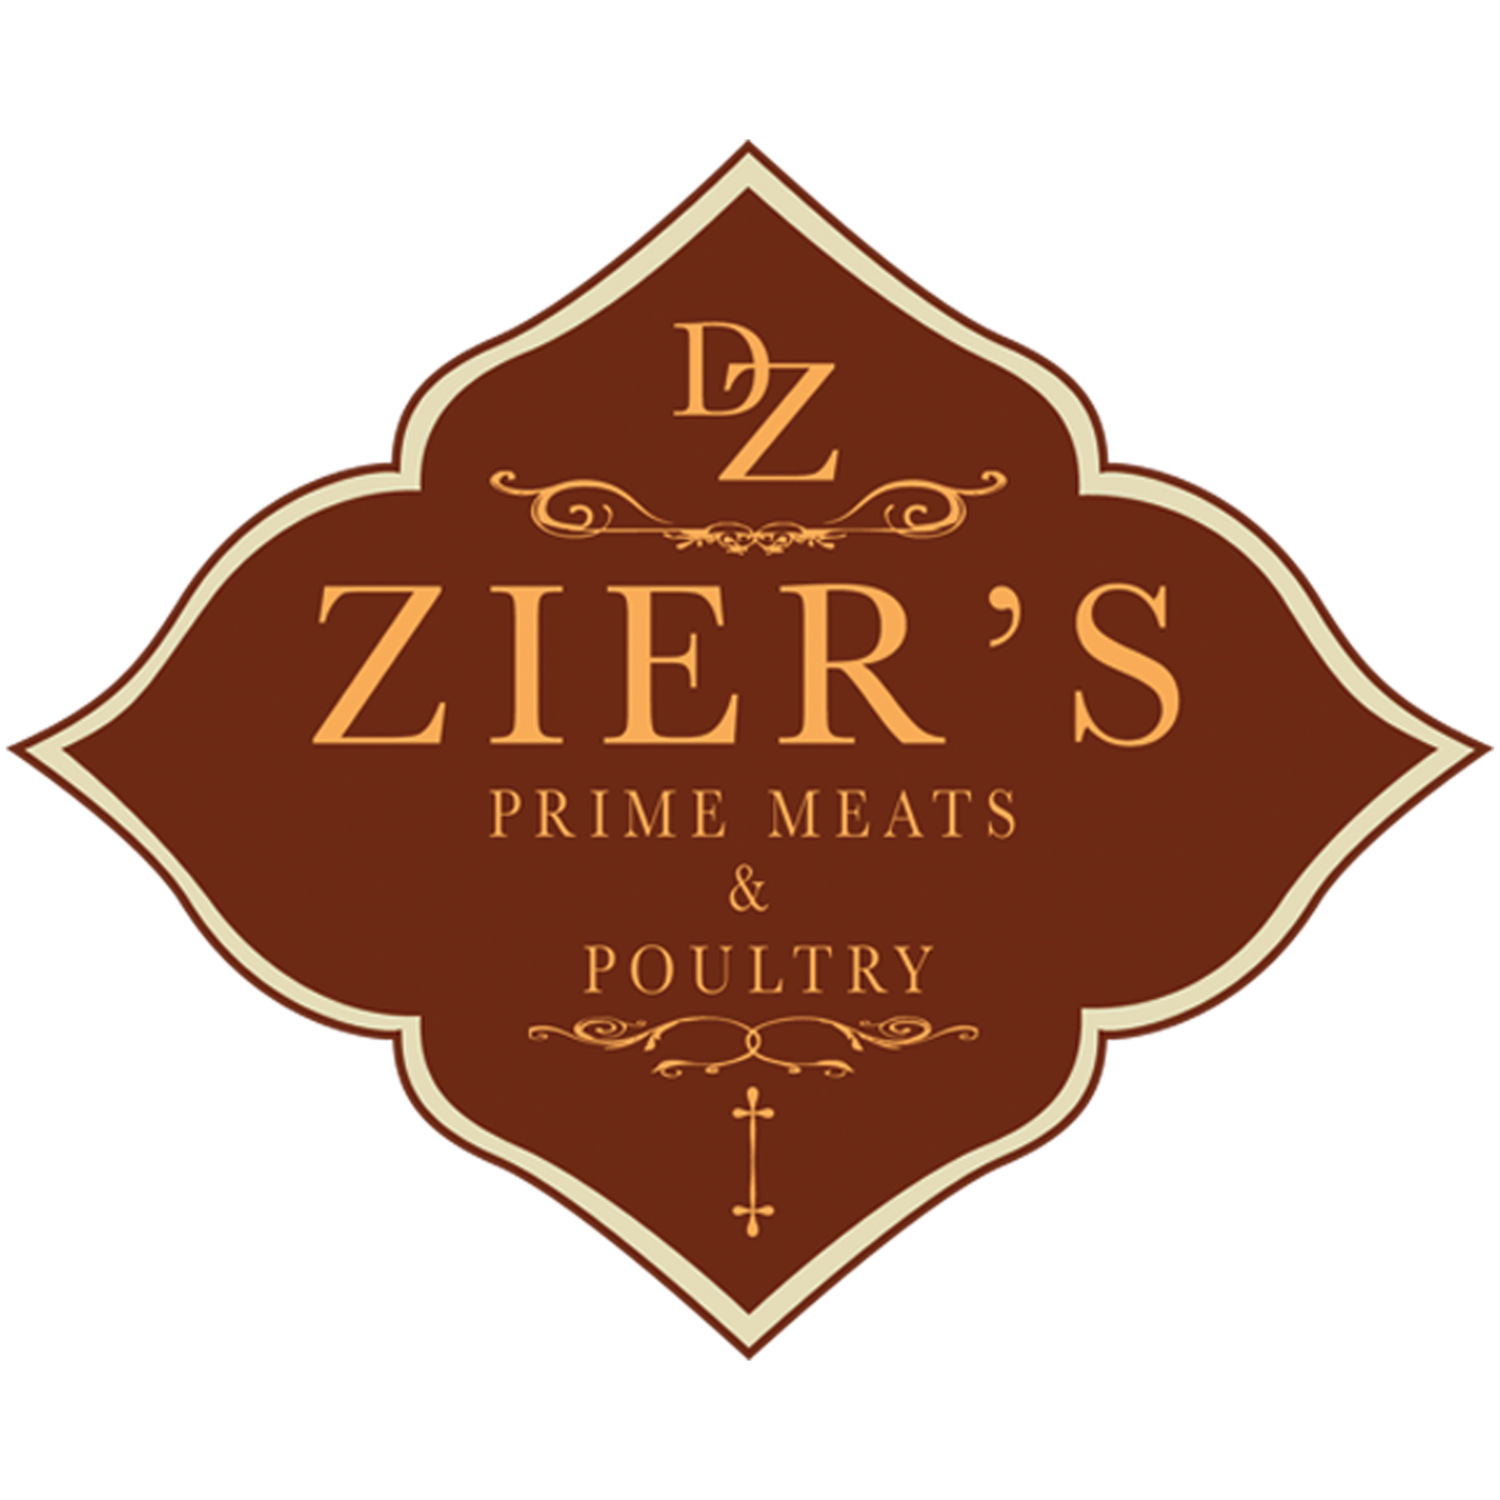 Zier's Prime Meats & Poultry